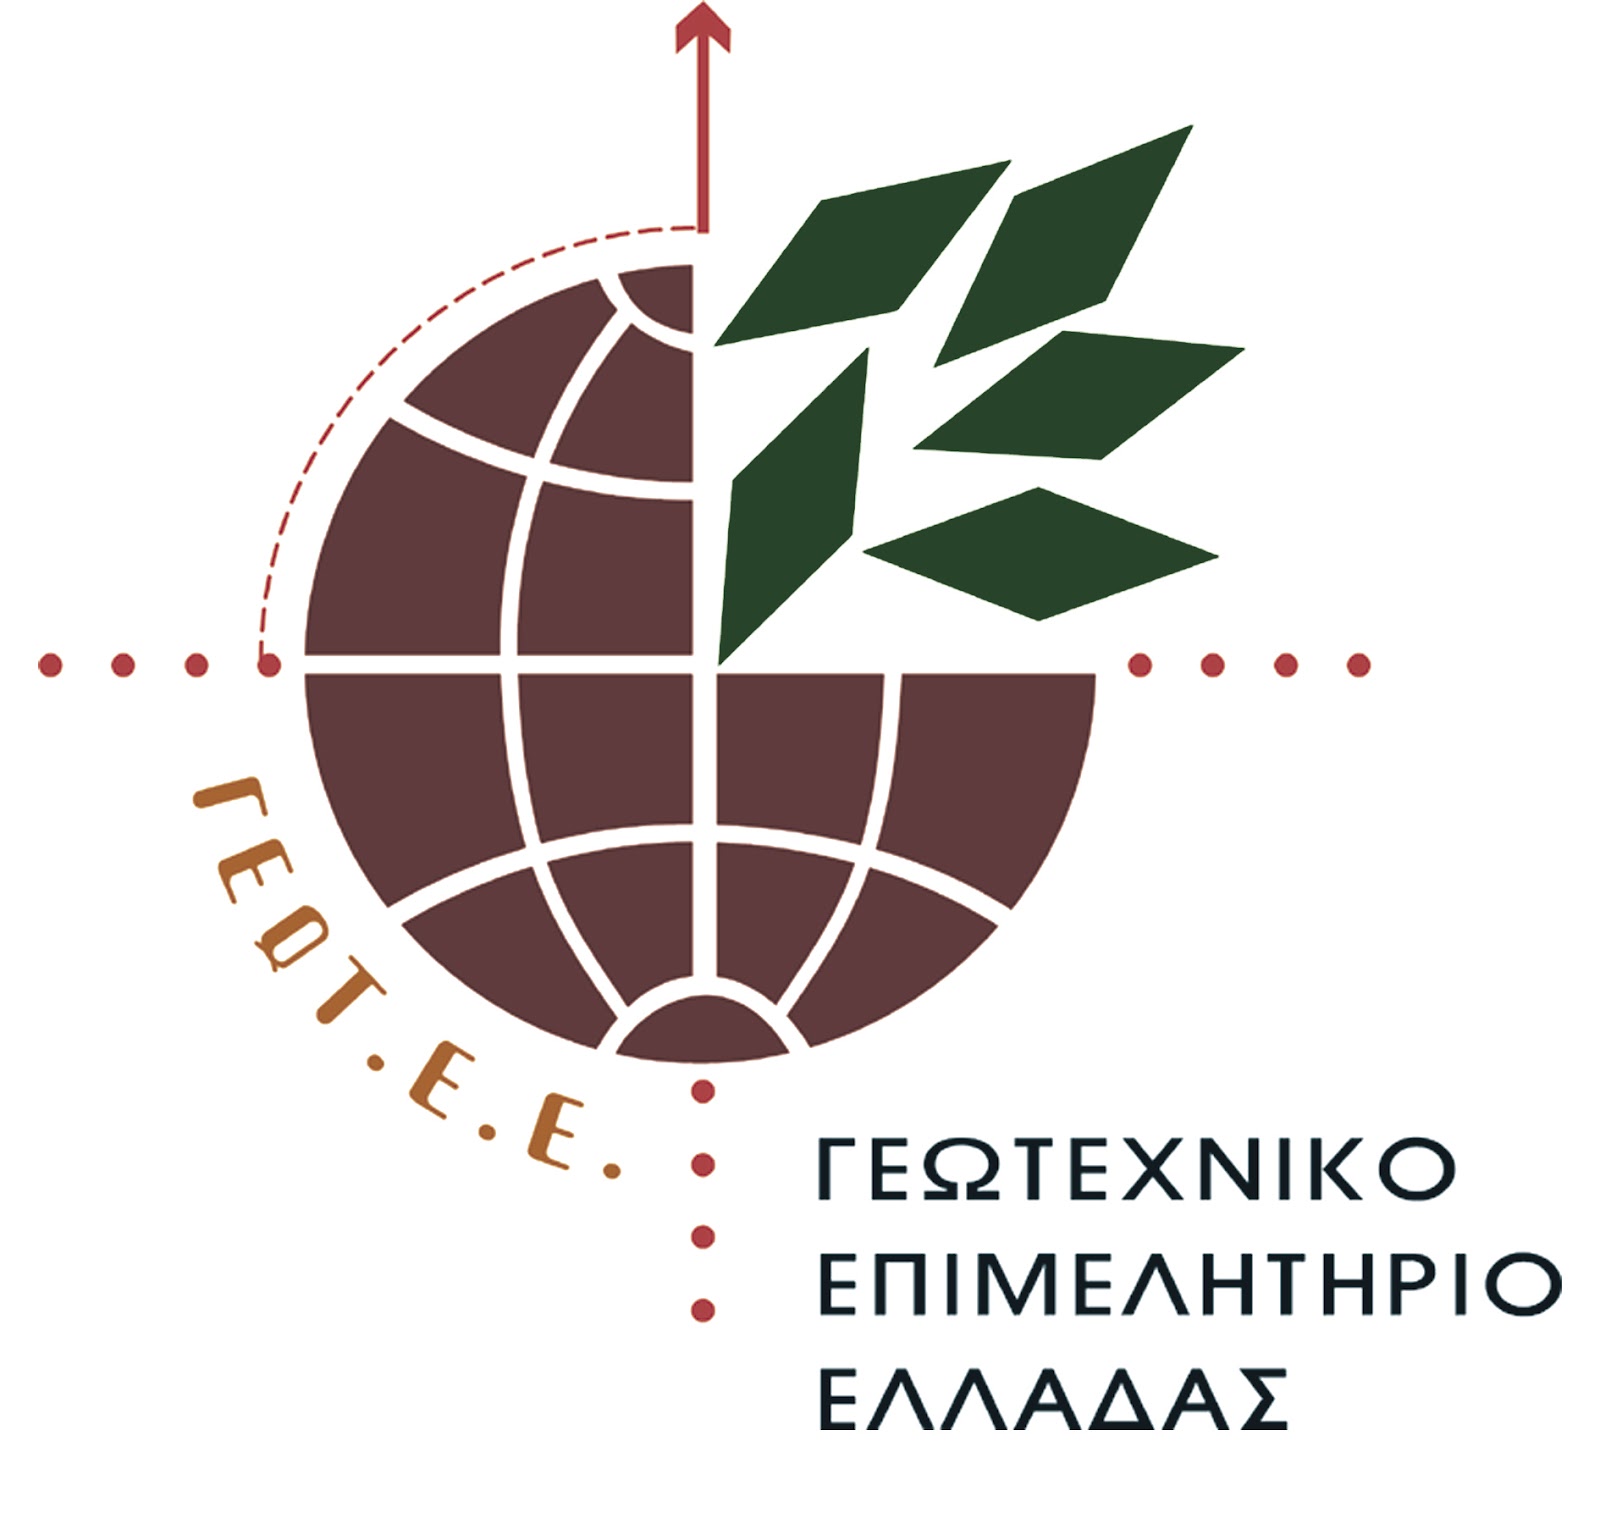 Γεωτεχνικό Επιμελητήριο Ελλάδας: Παράρτημα Δυτικής Μακεδονίας: Ανοικτή συζήτηση – διαβούλευση με θέμα: «Νέα πρόσκληση των σχεδίων βελτίωσης – Υπομέτρο 4.1.5 του ΠΑΑ 2014-2022».